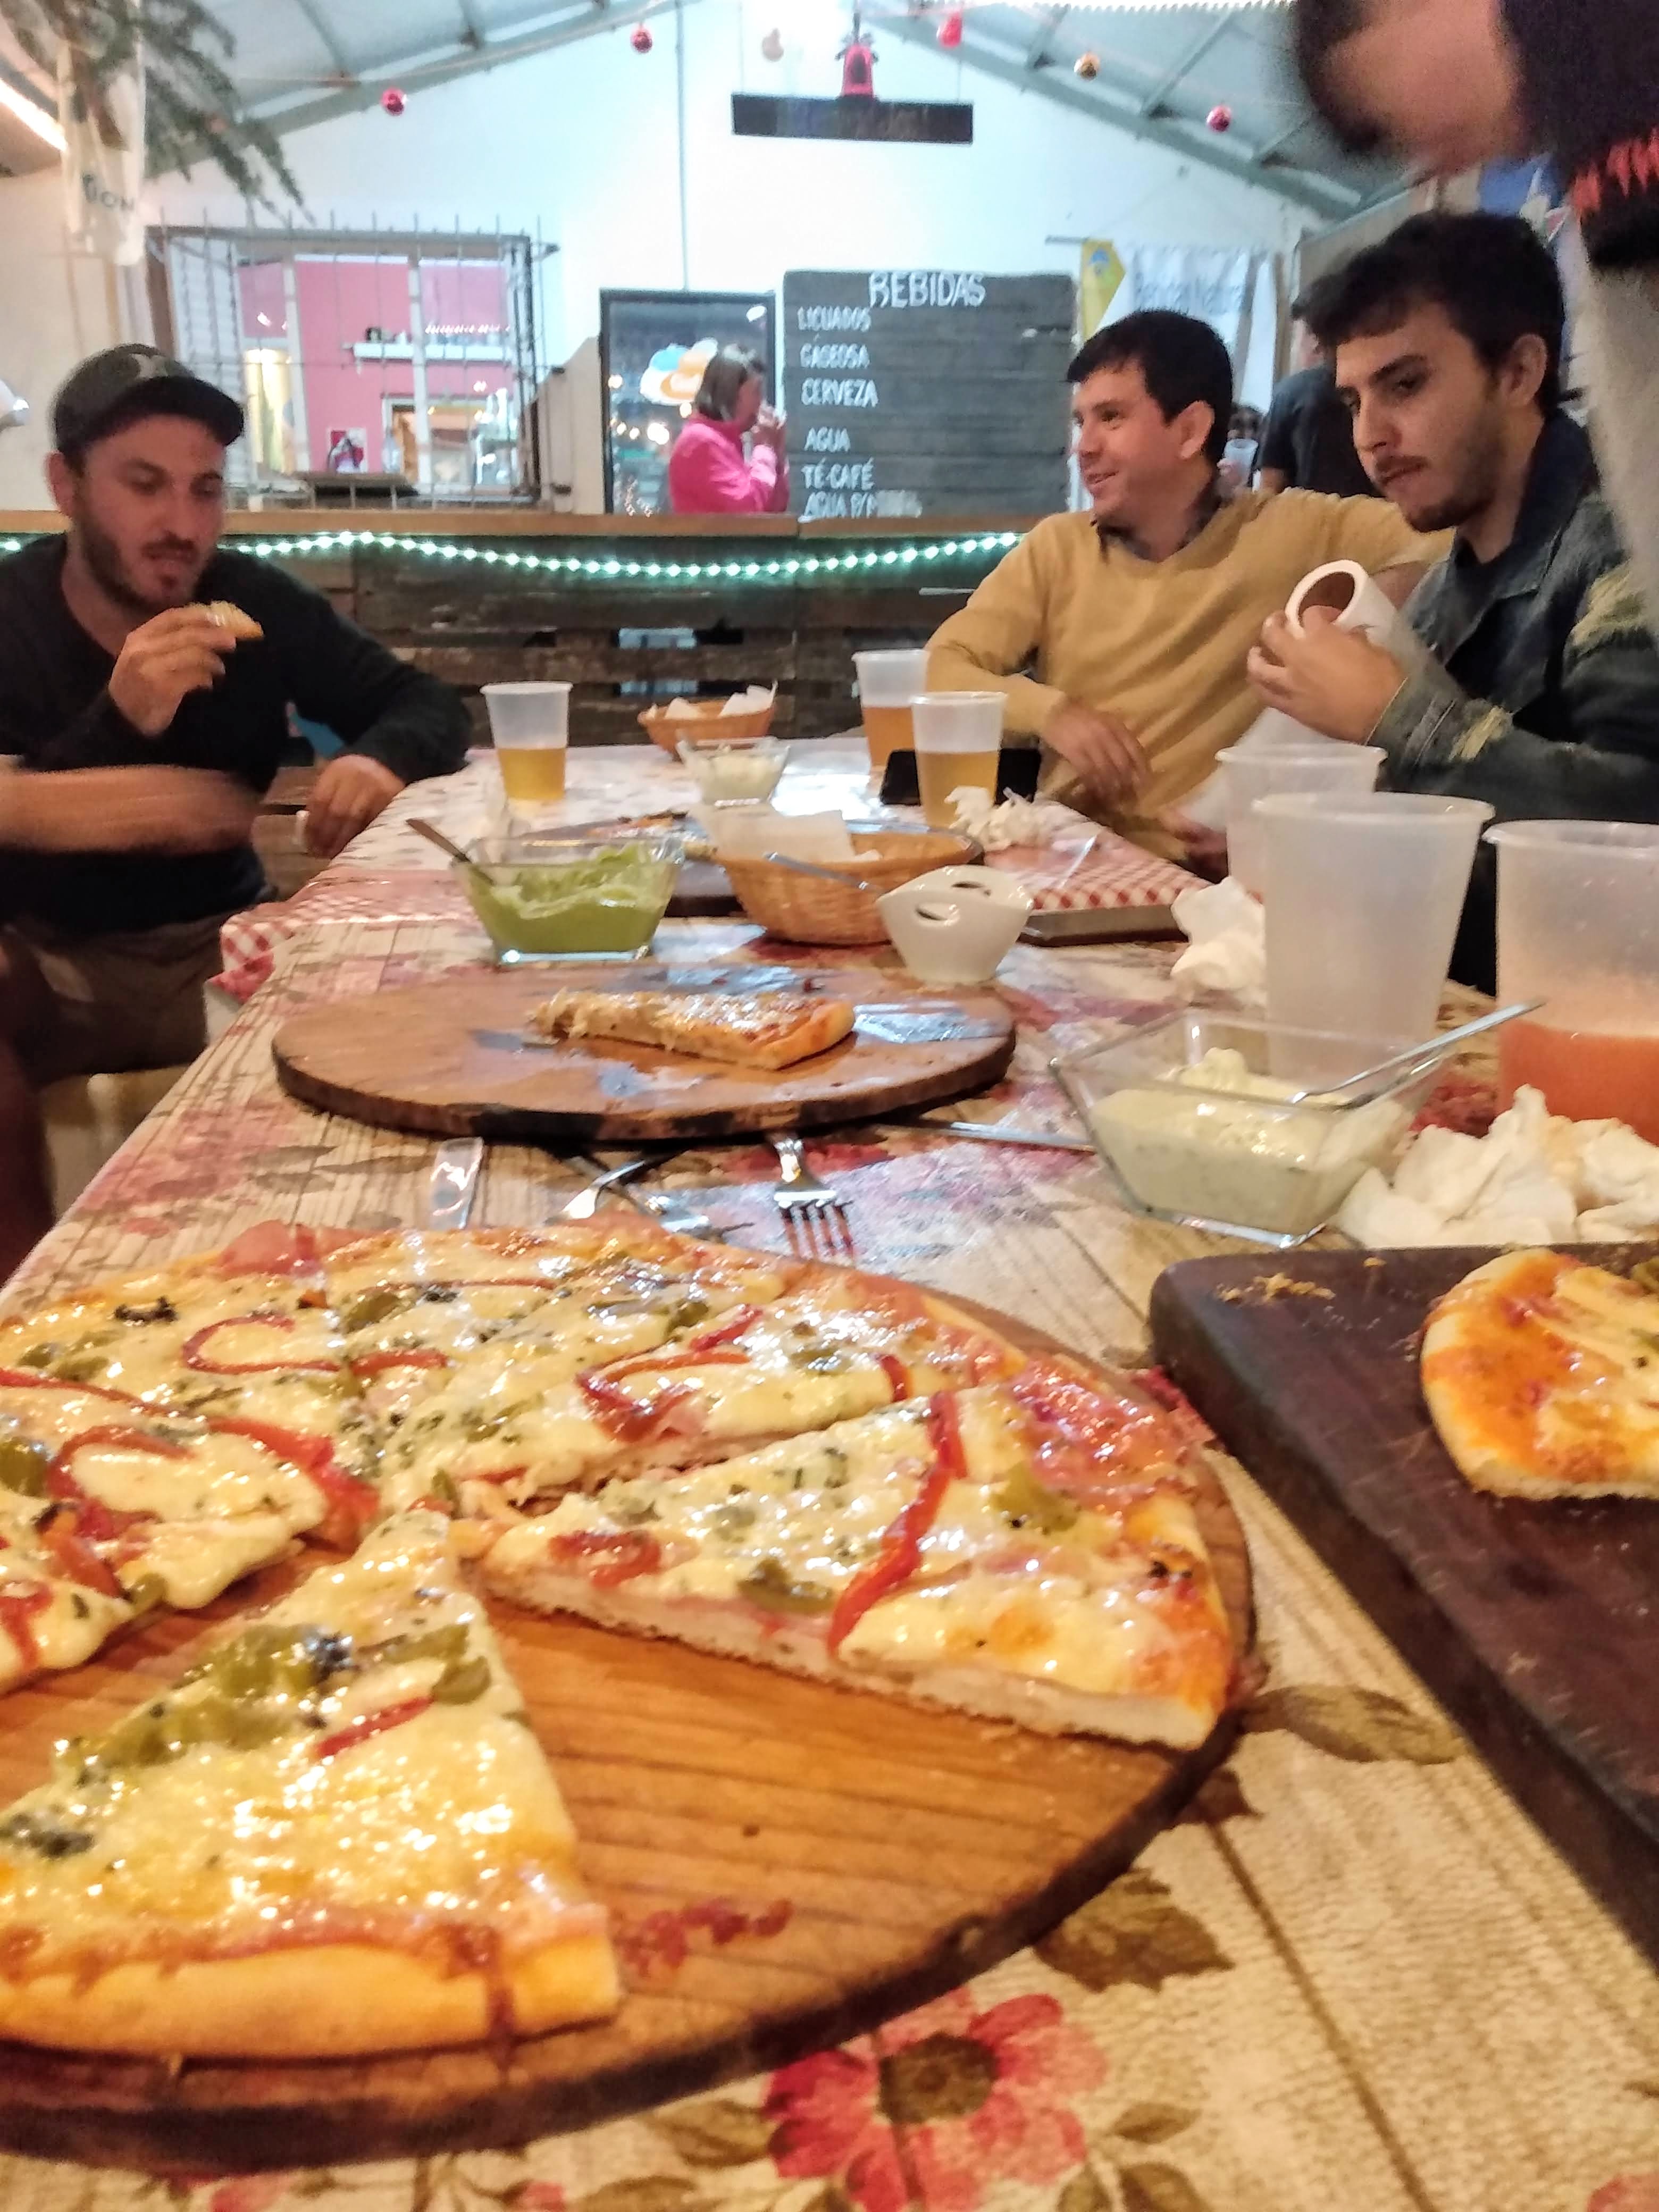 Grupo de amigos disfrutando de una noche de pizzas